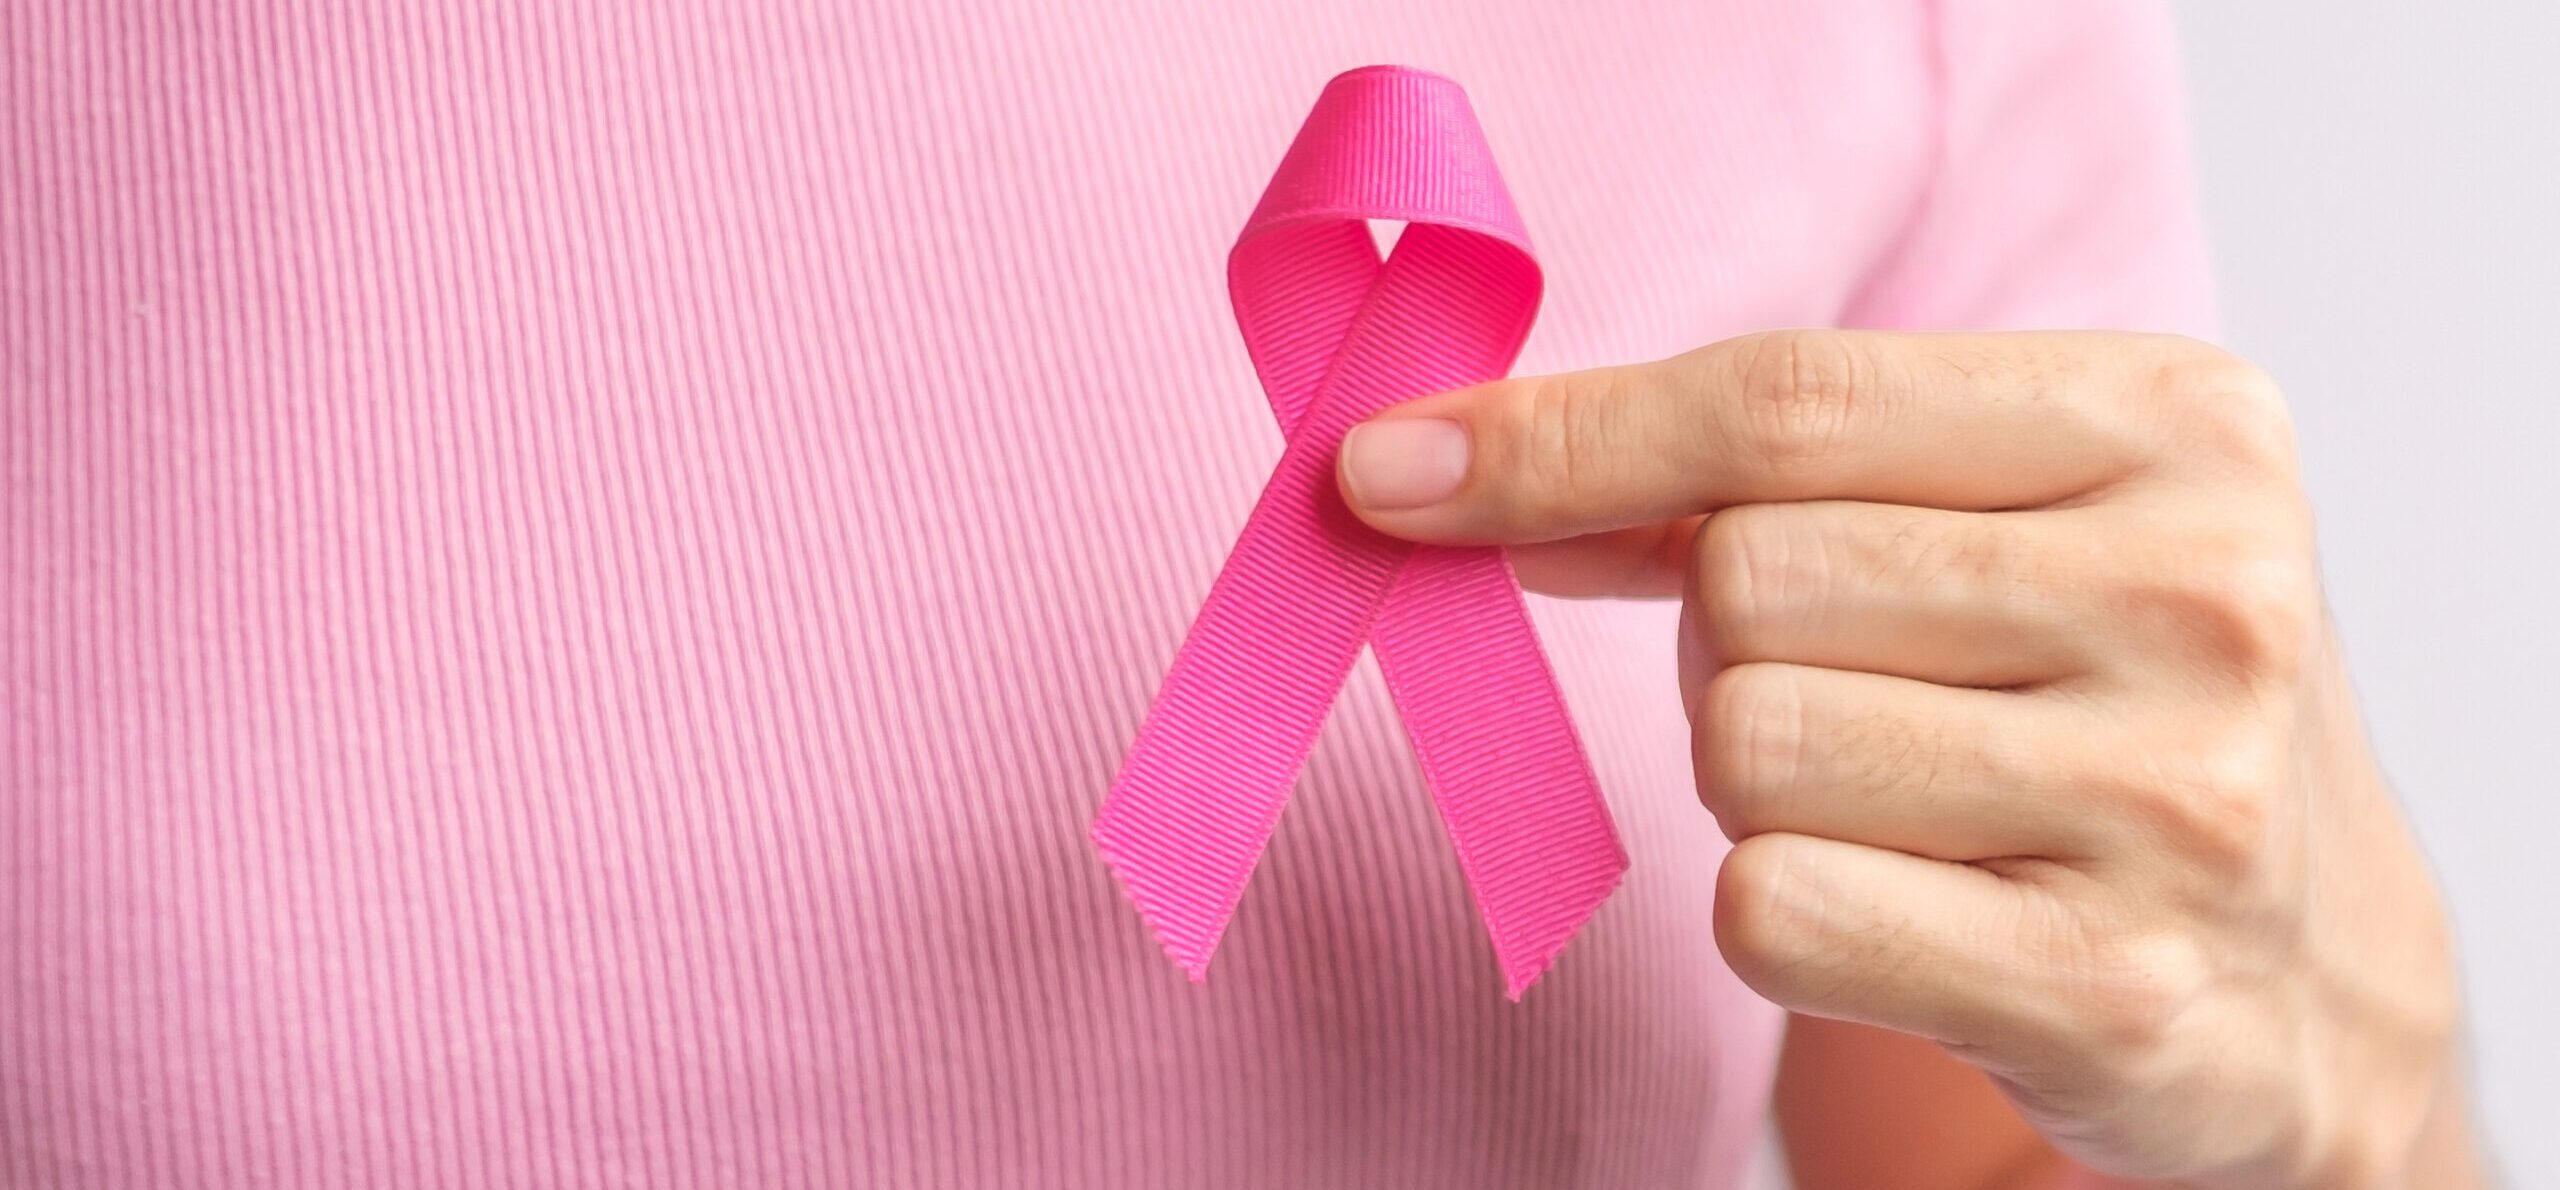 Dia Mundial do Cancro (World Cancer Day)